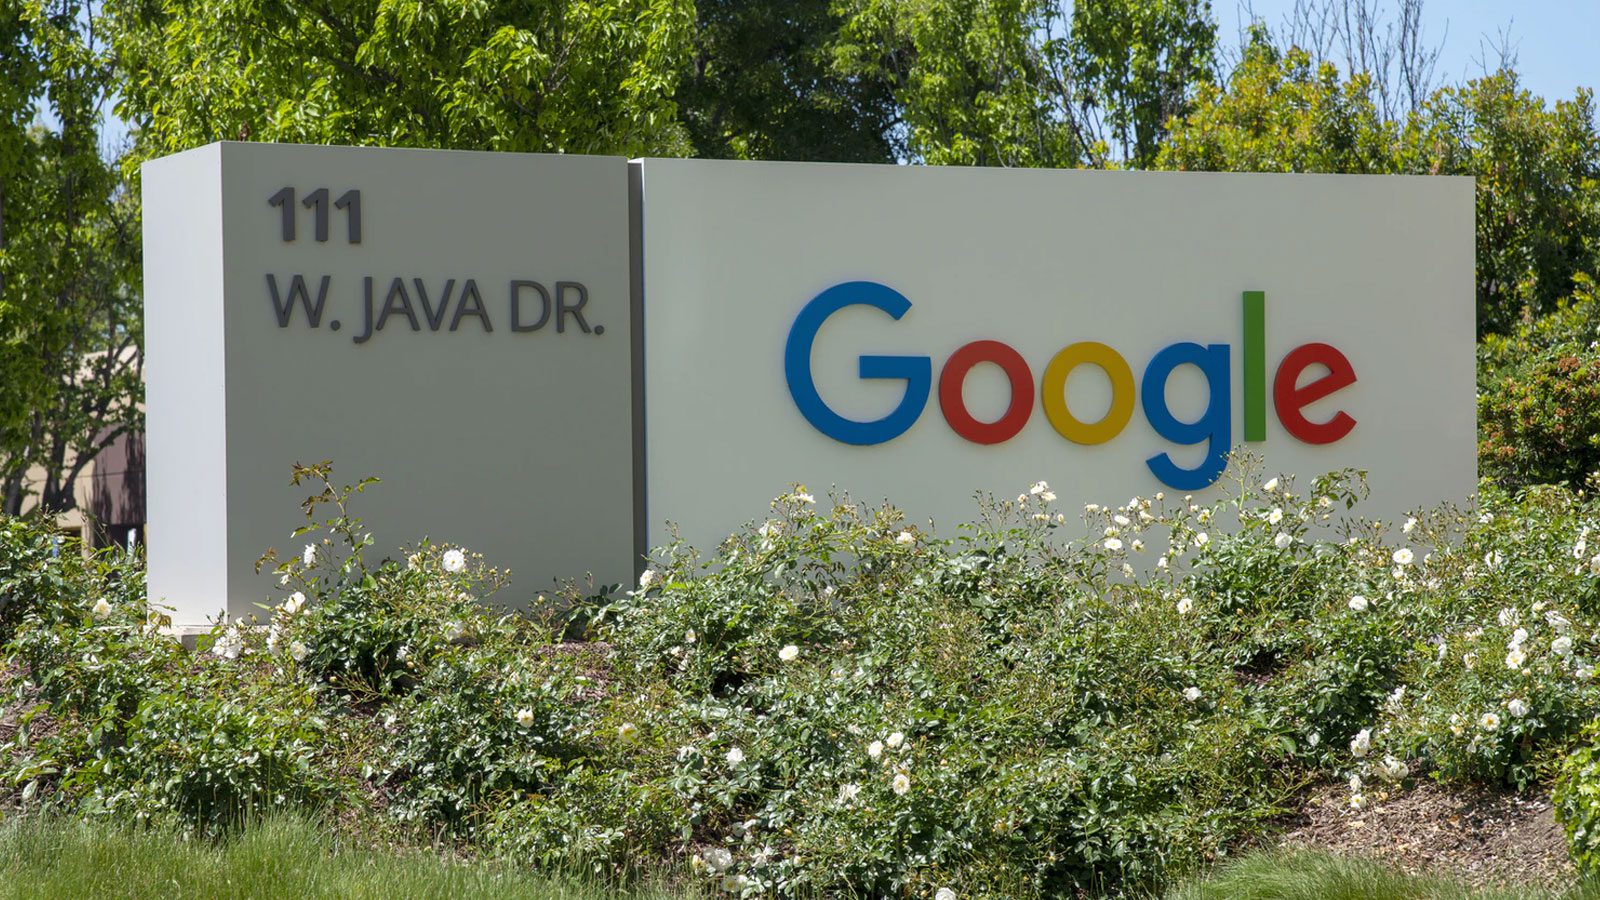 Alphabet, материнская компания Google, заработала рекордную выручку в $257 млрд в 2021 году